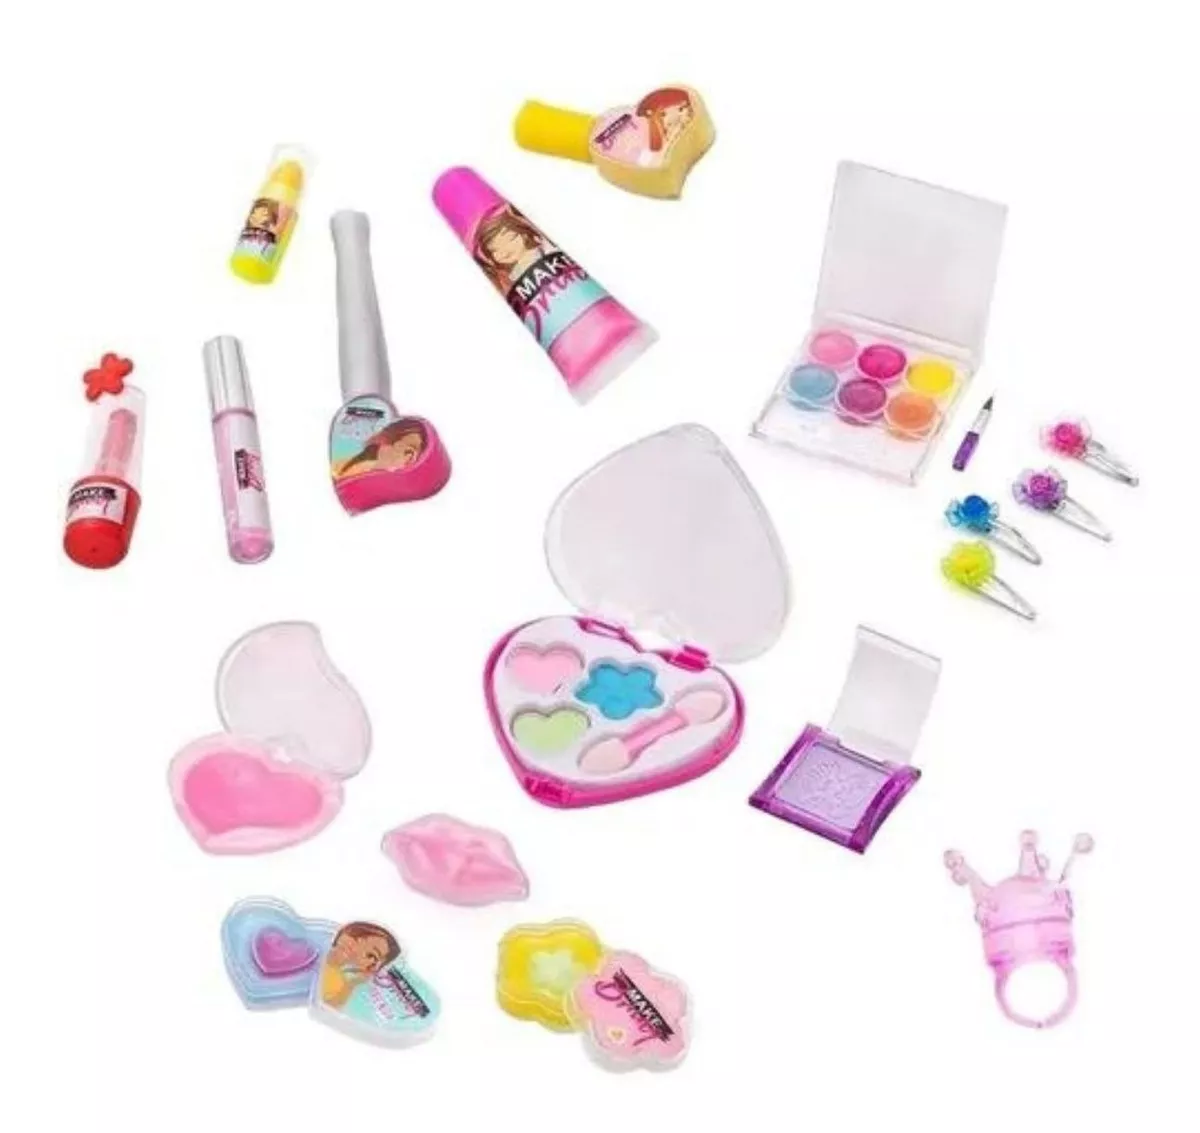 Primeira imagem para pesquisa de kit maquiagem infantil completo